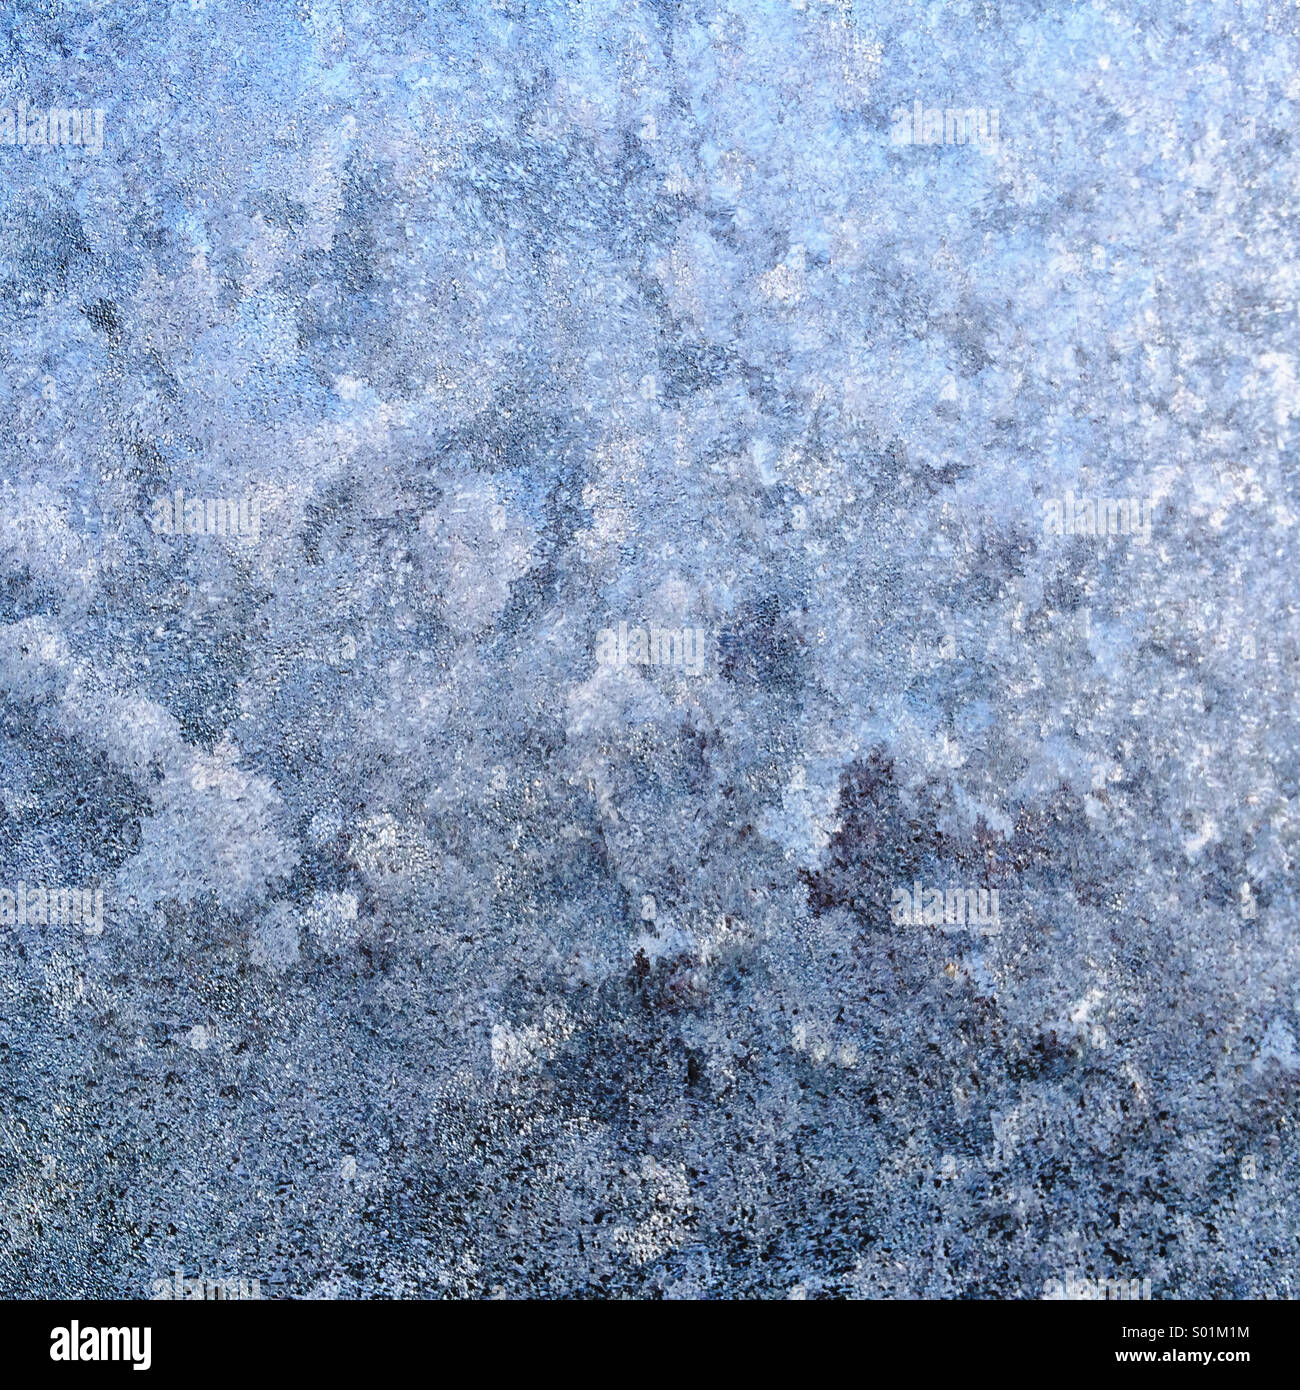 Frosty windscreen Stock Photo